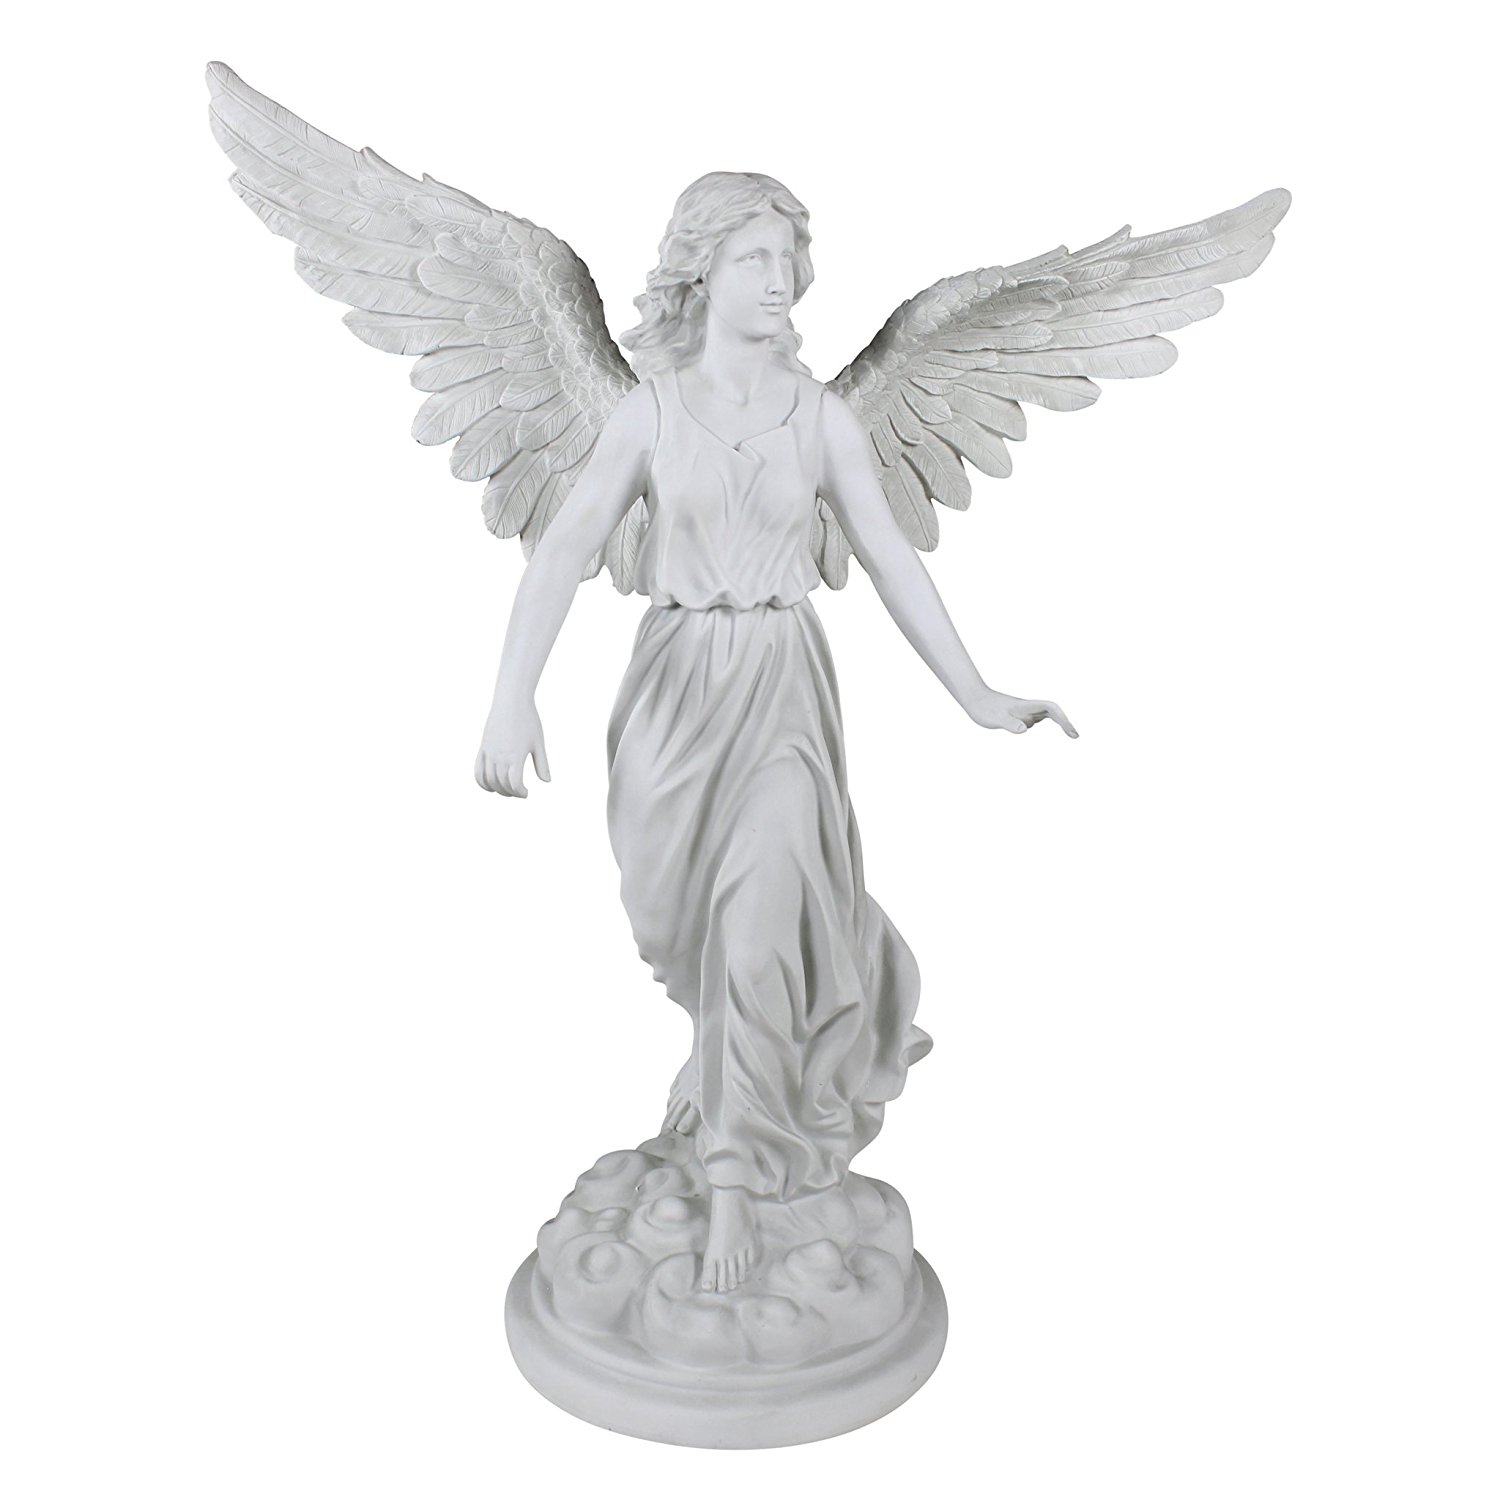 Amazon.com : Design Toscano Angel of Patience Sculpture : Outdoor ...